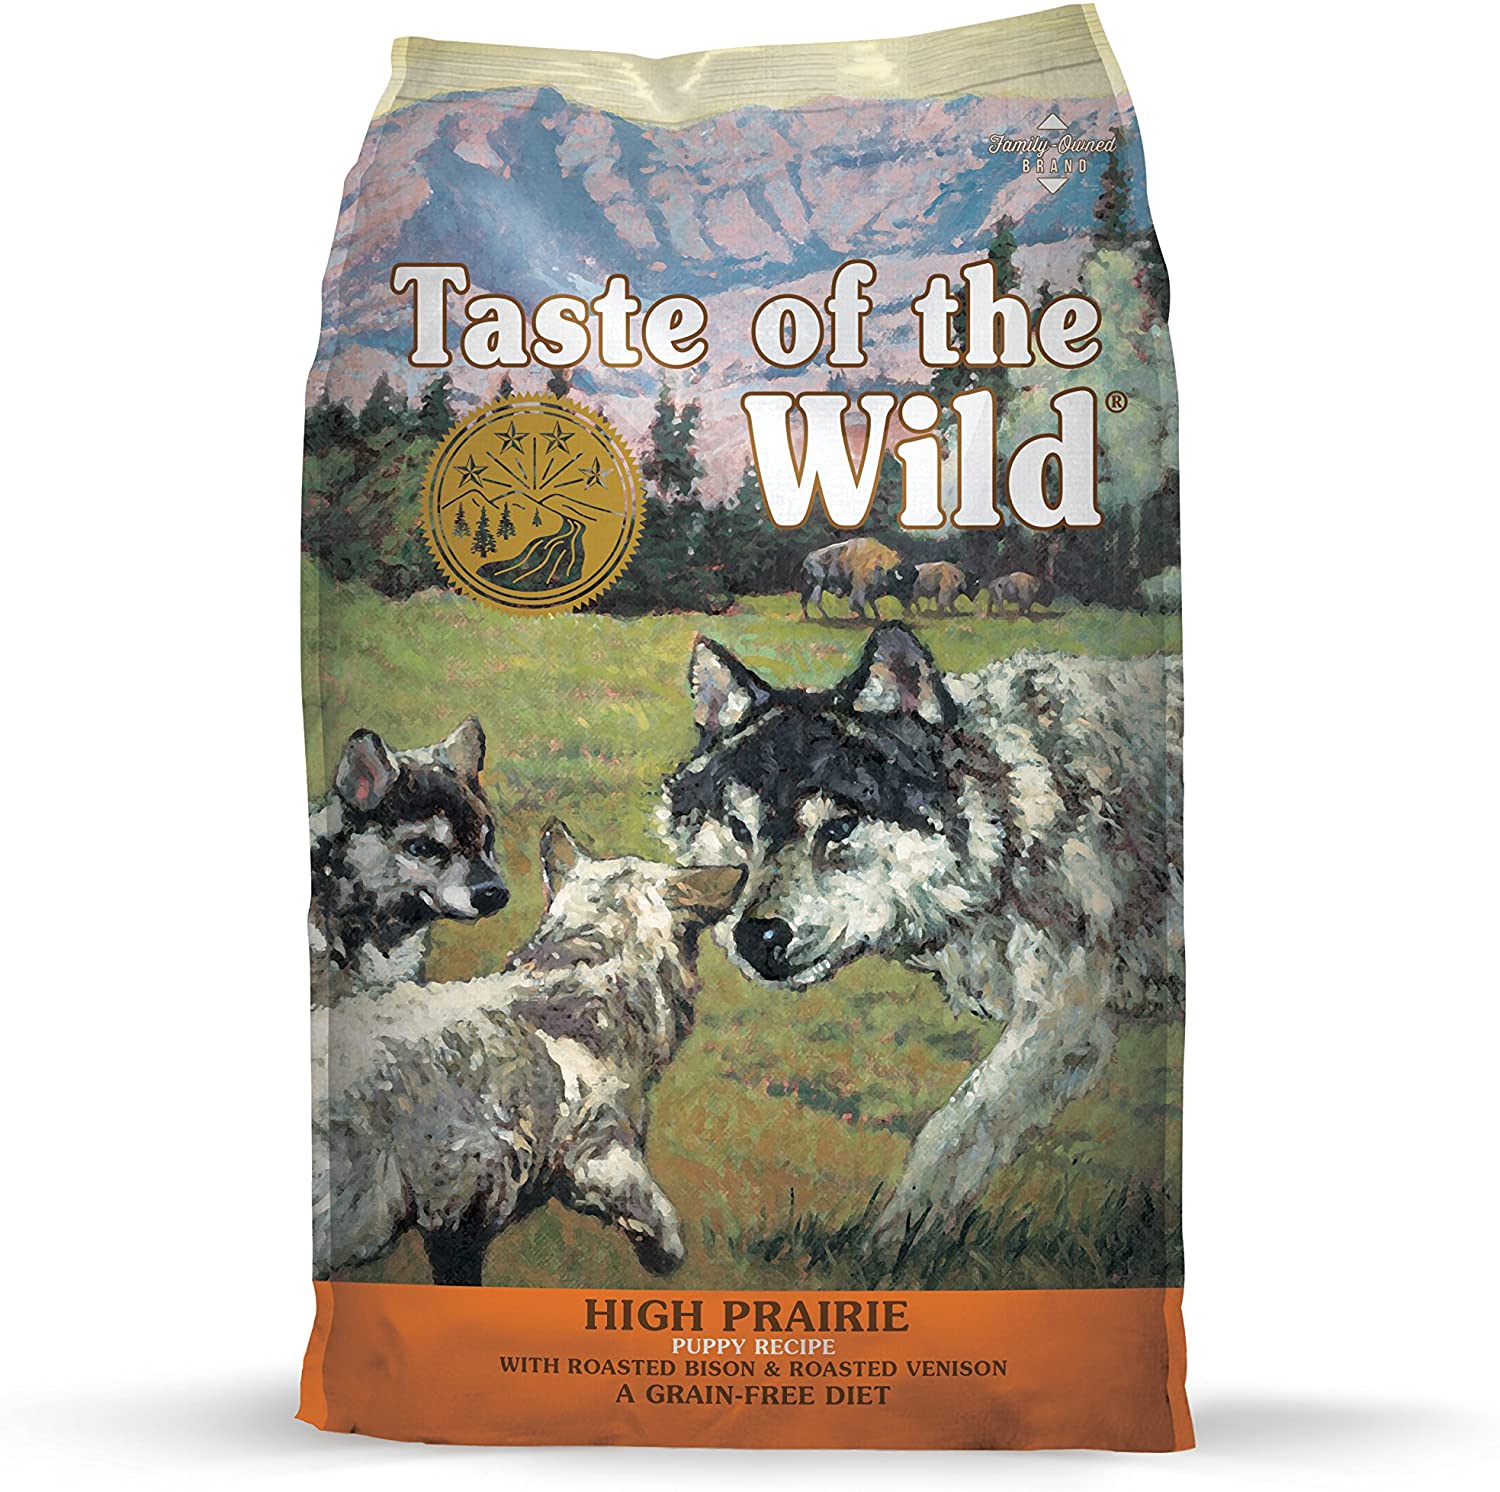  Sabor de la Wild Cachorro Alimentos Alta Tostado Carne de venado de Las praderas y Bison 6,8 kg 